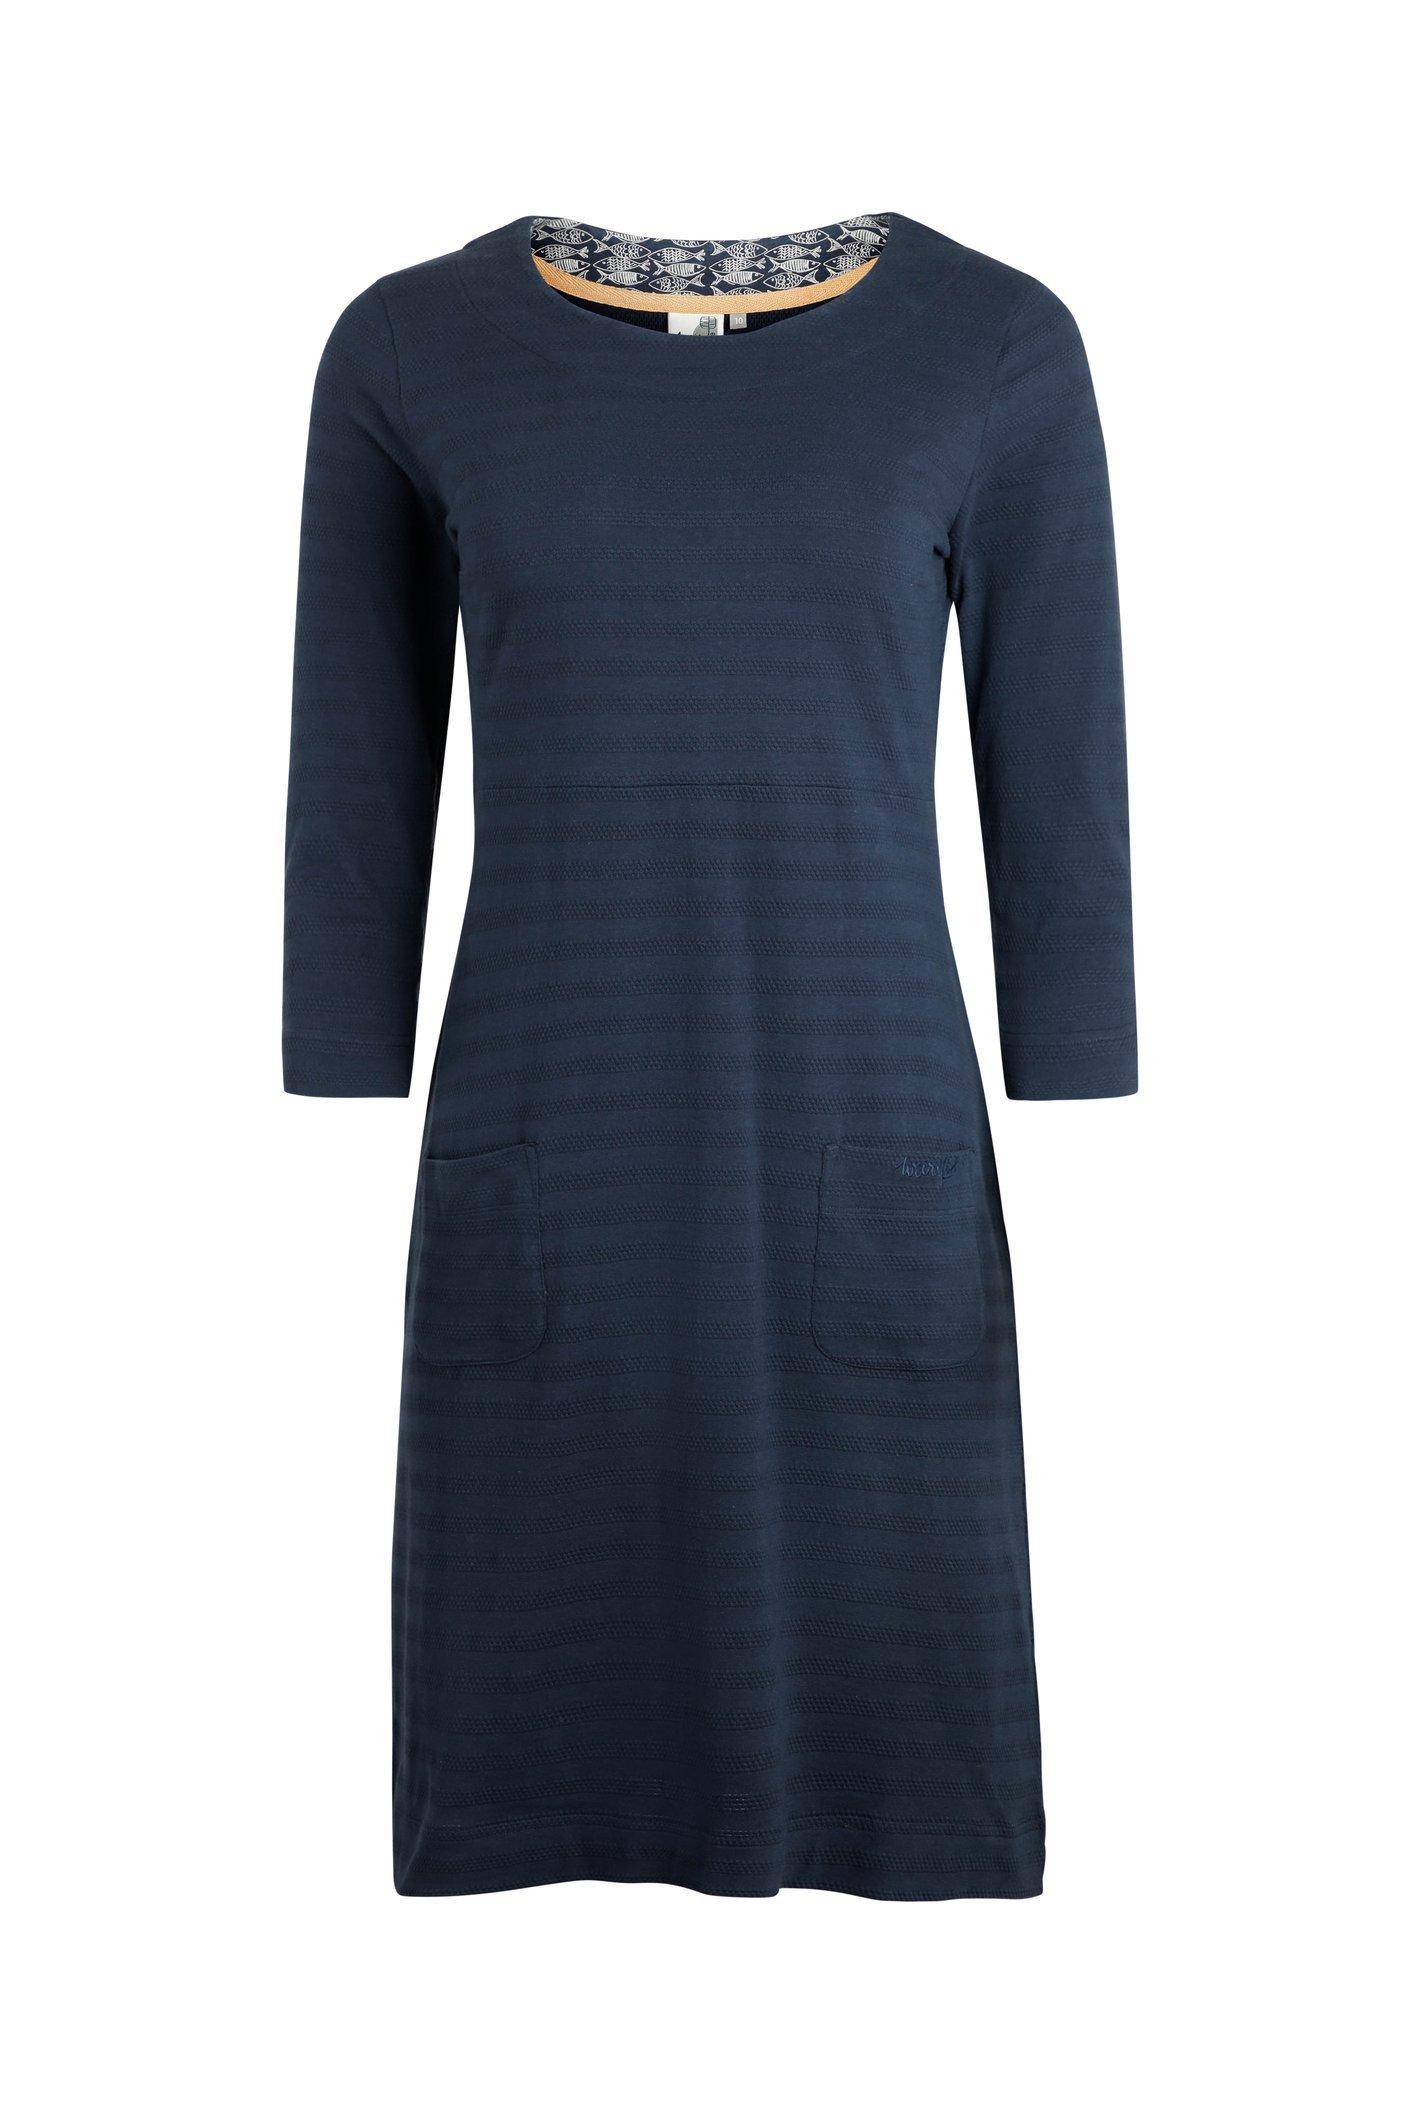 Imma Organic Cotton Jersey Dress